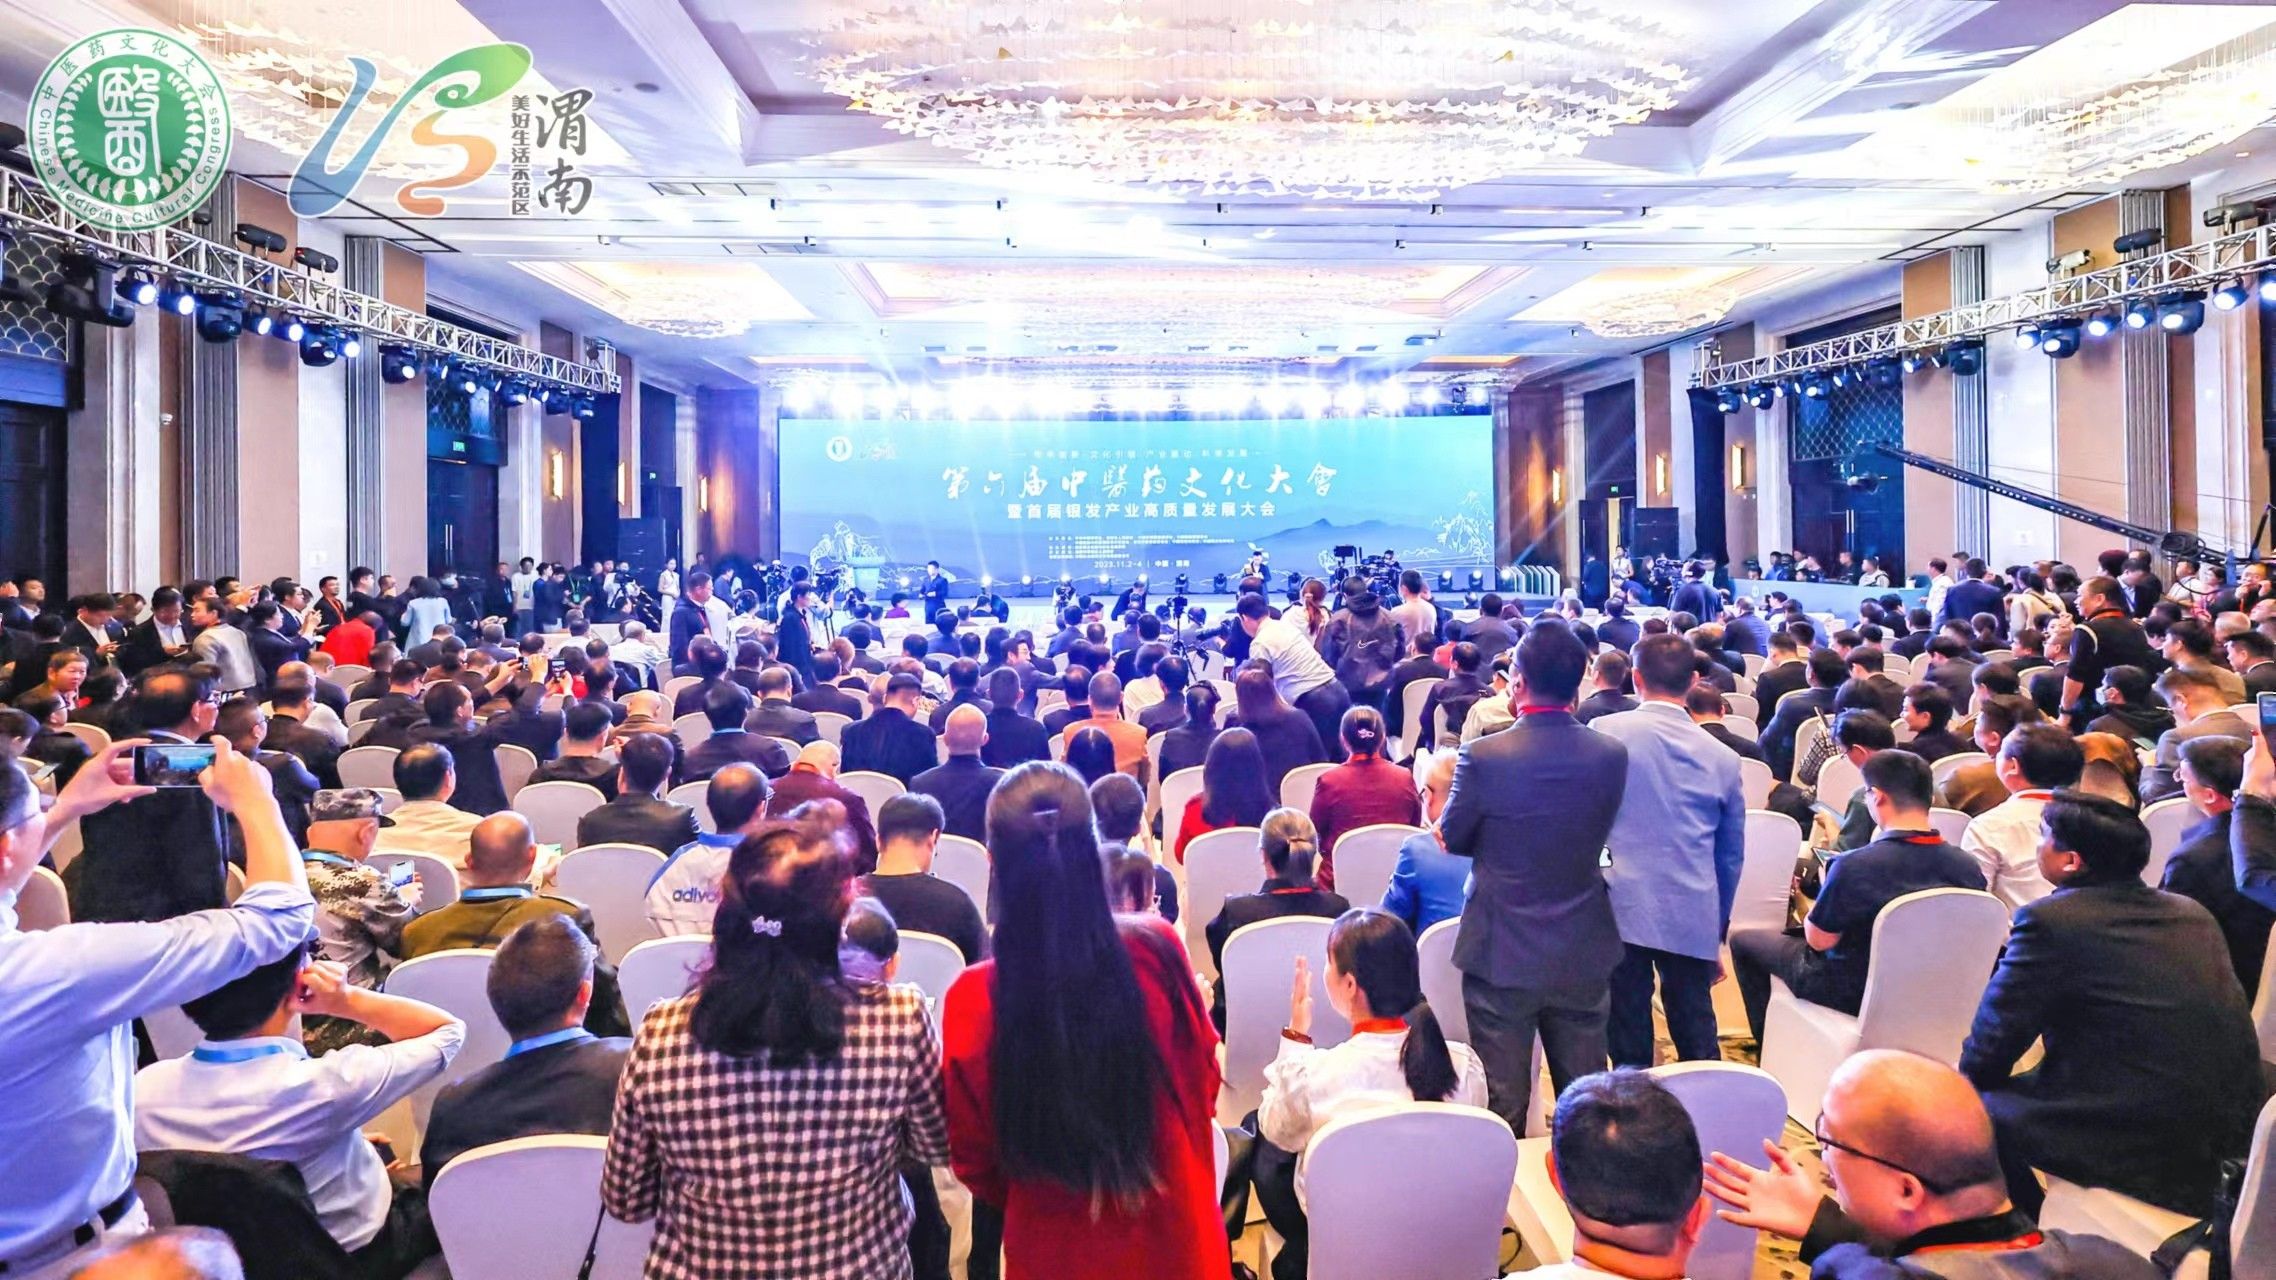 第六届全国中医药文化大会暨中医药大健康及银发产业博览会在渭南举行